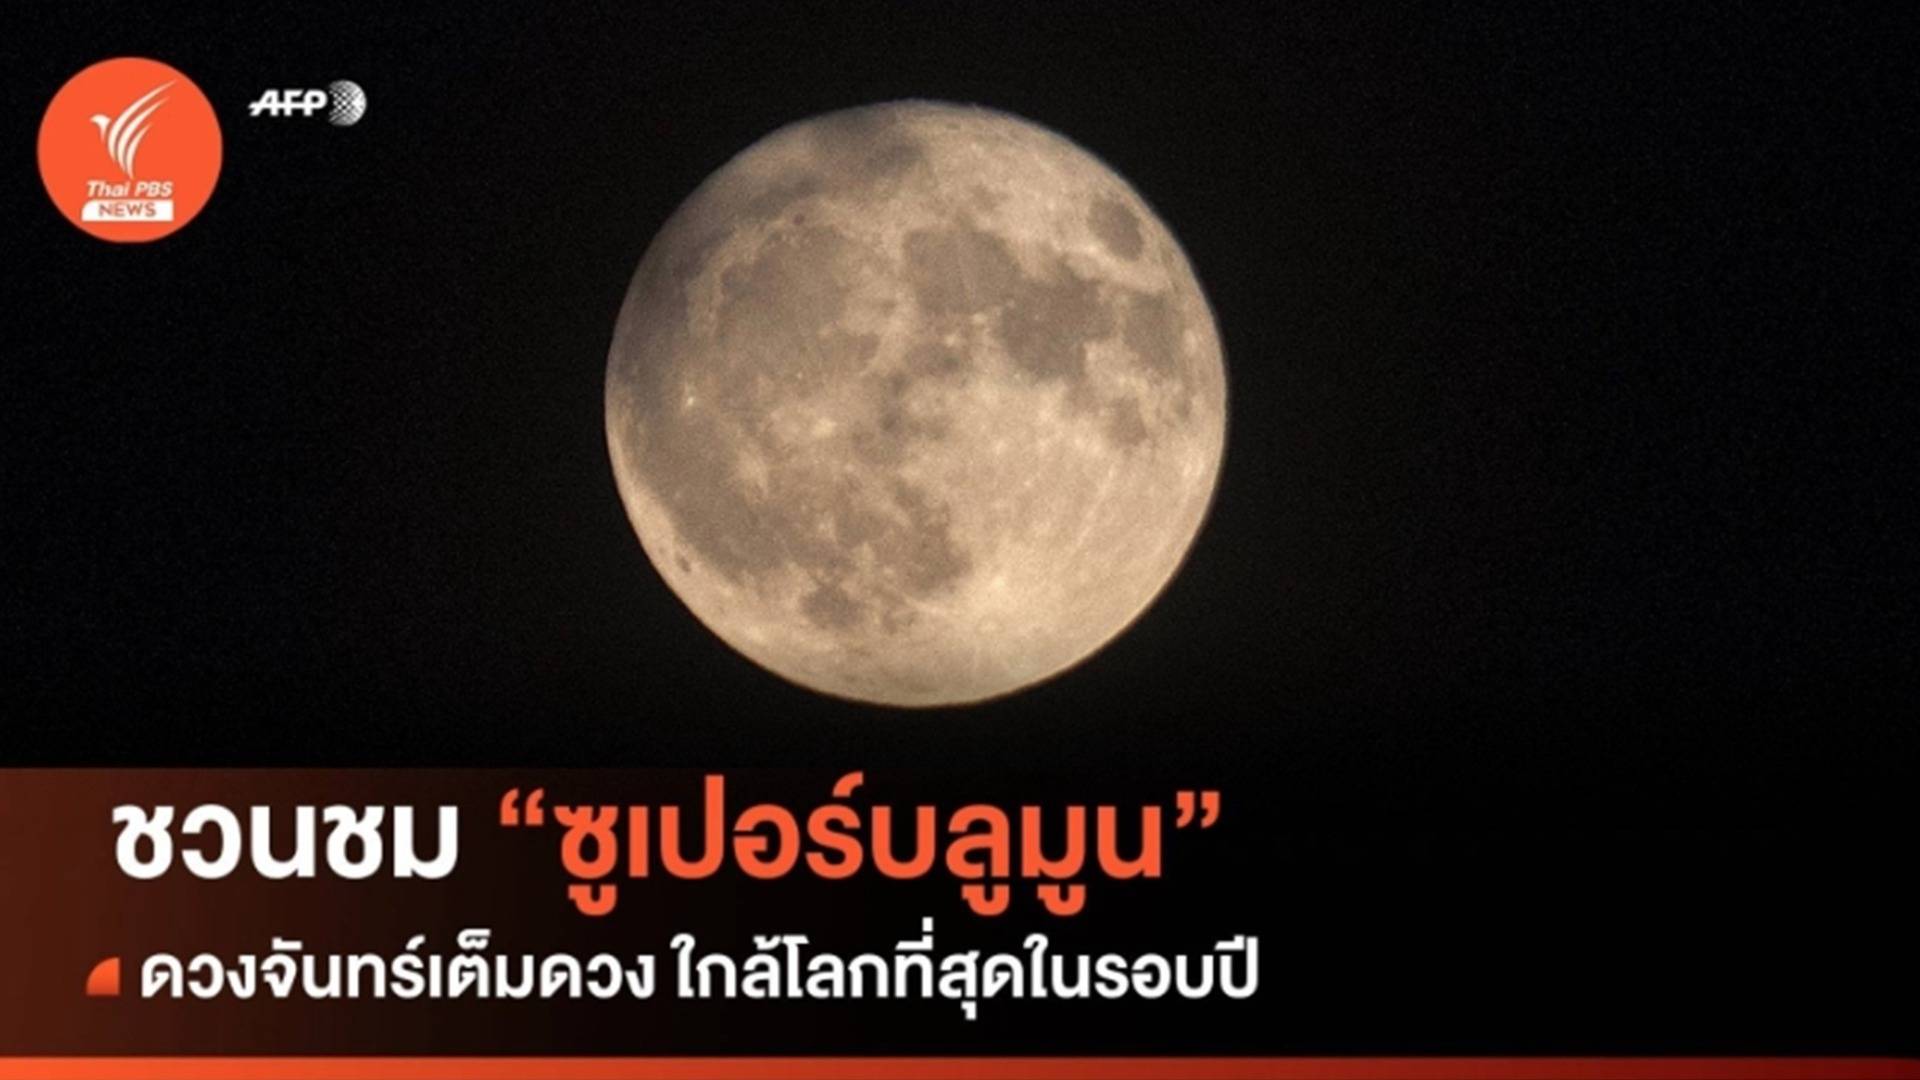 "ซูเปอร์บลูมูน" ดวงจันทร์เต็มดวงใกล้โลกสุดในรอบปี คืนวันที่ 30 ส.ค.66